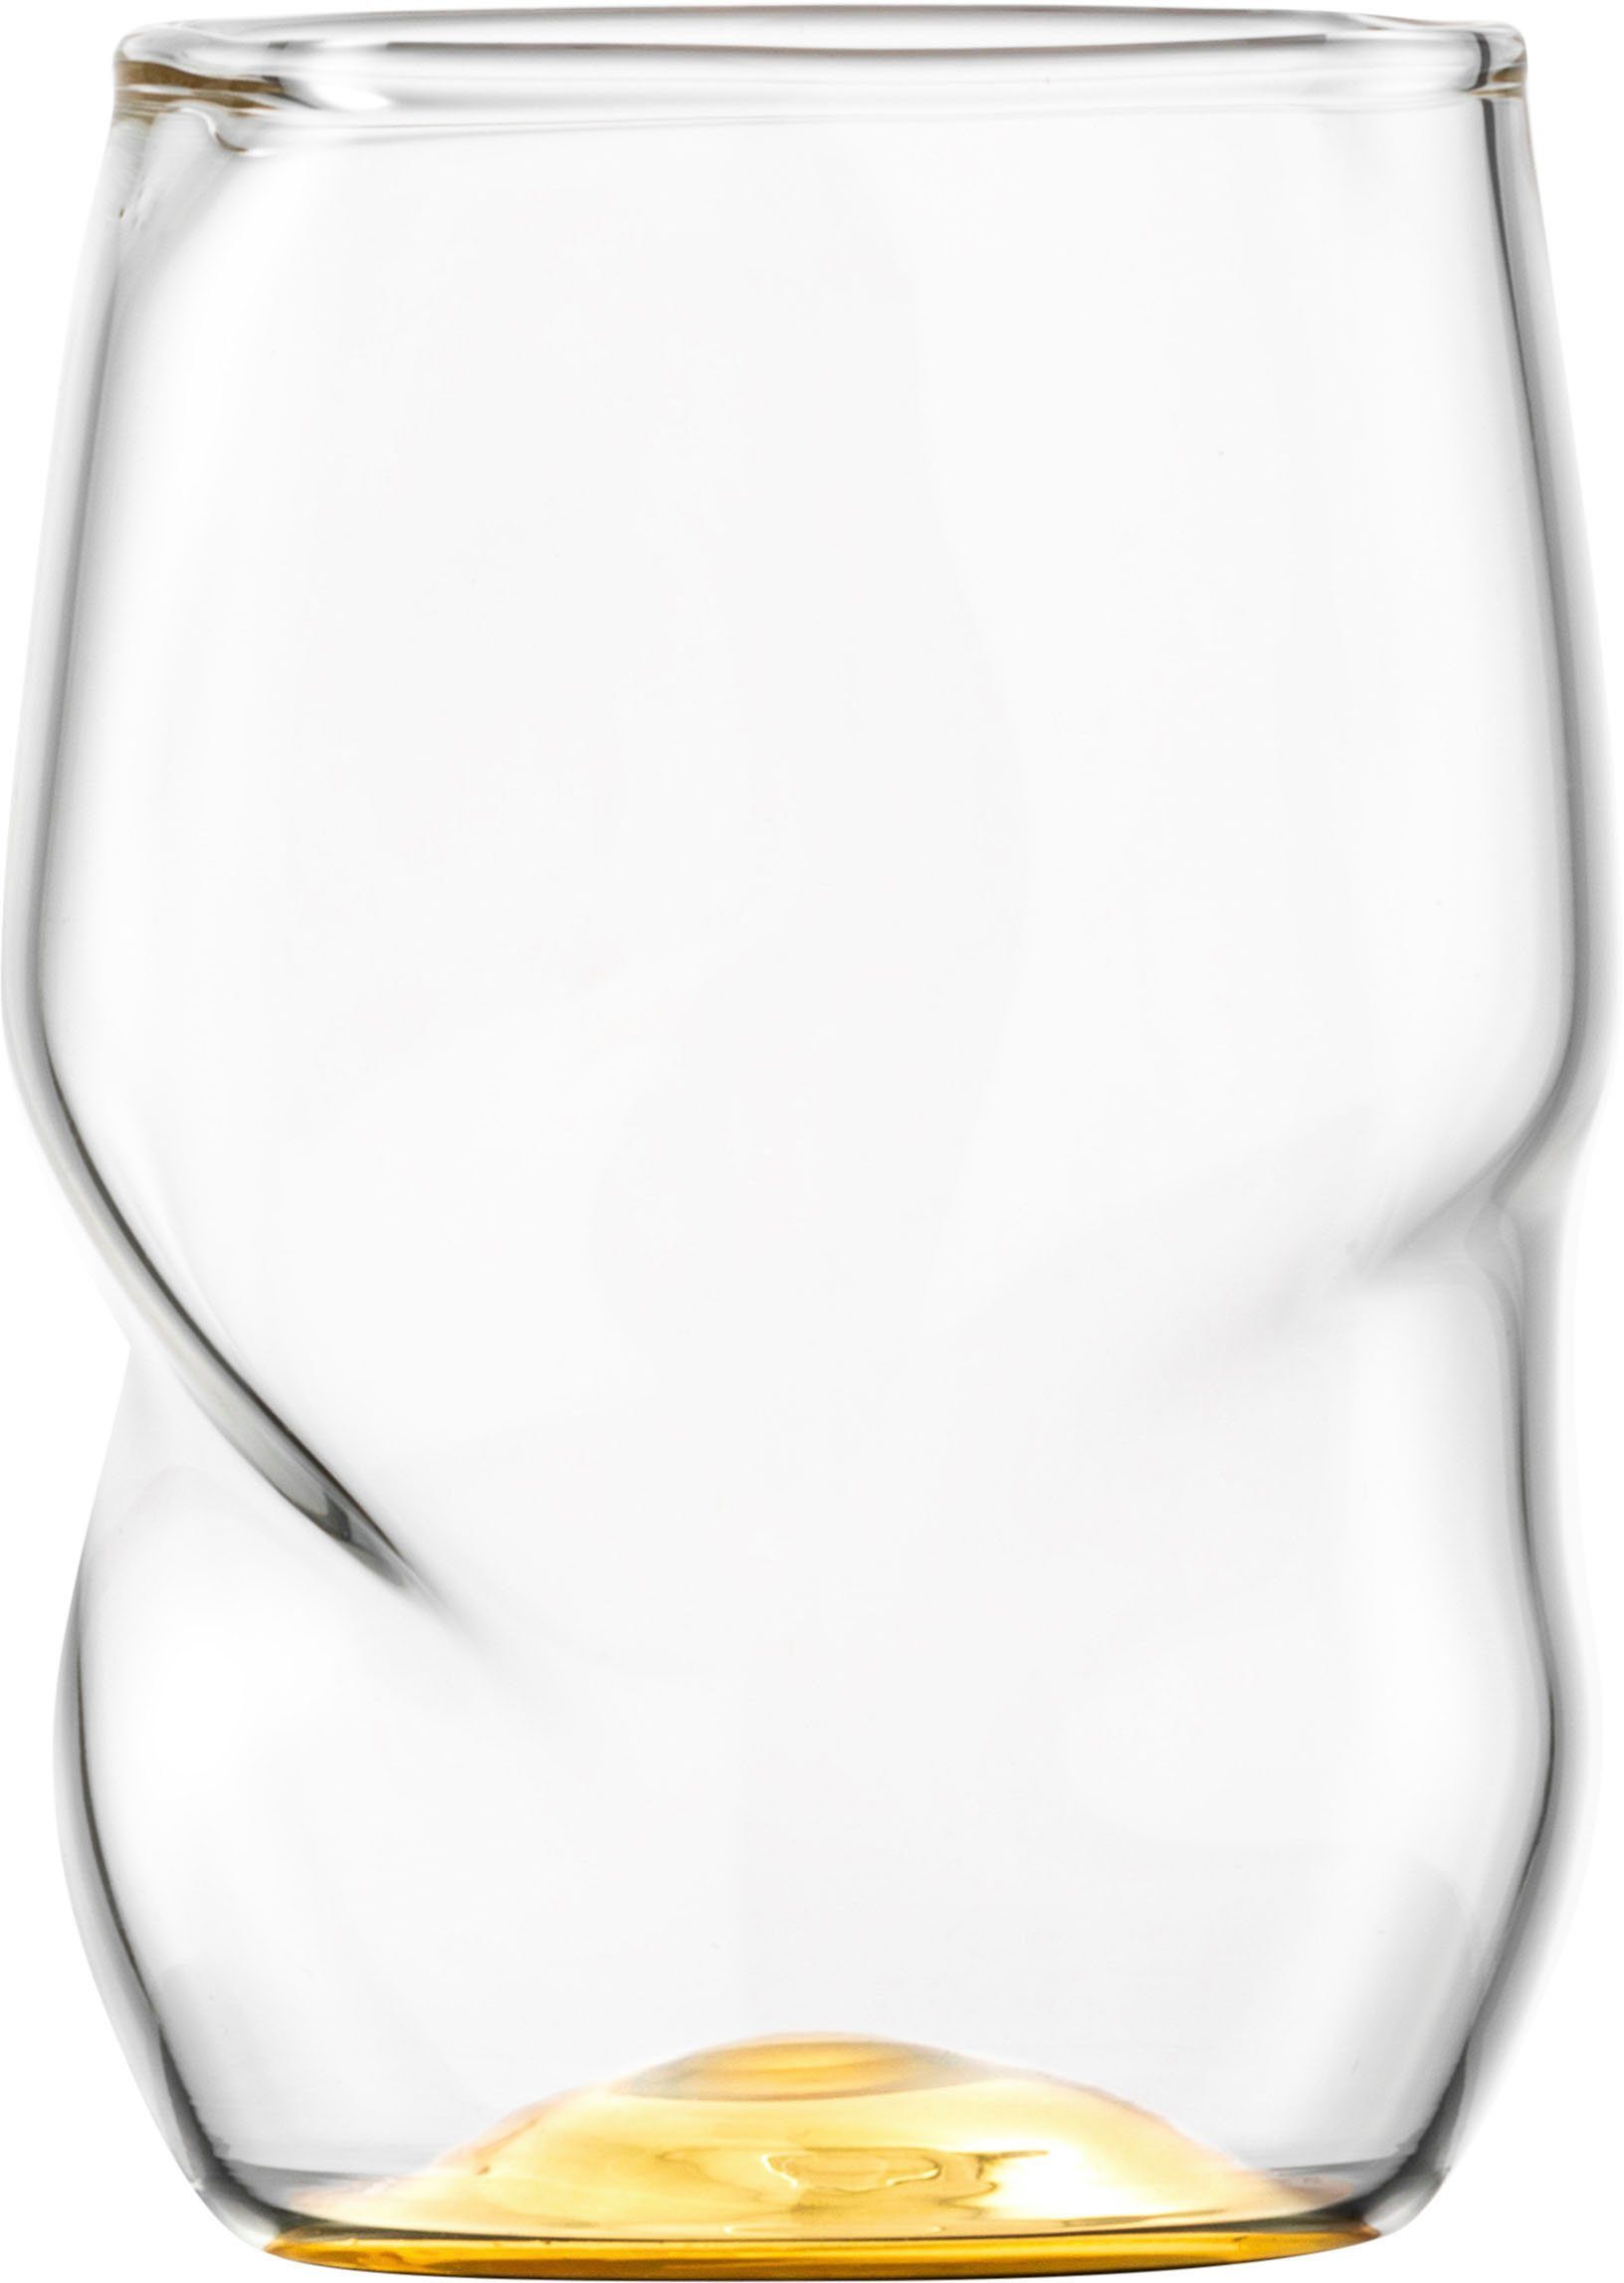 Eisch Becher UNIK, Borosilikatglas, Allroundbecher, veredelt mit Echtgold,  2-teilig, 300 ml, Bei einer Höhe von 10cm beträgt das Volumen des Glases  ca. 300ml.